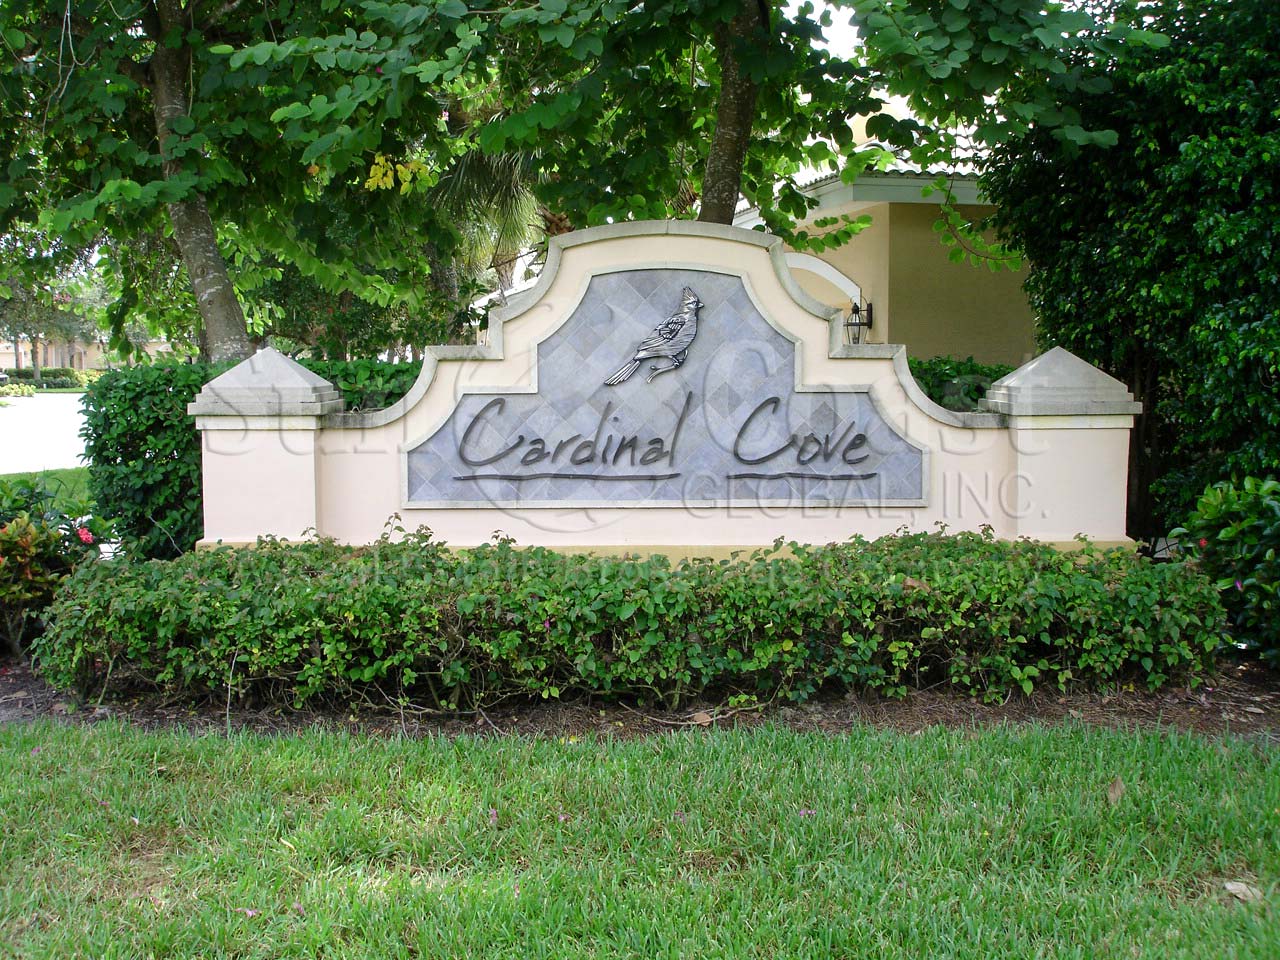 Cardinal Cove Signage